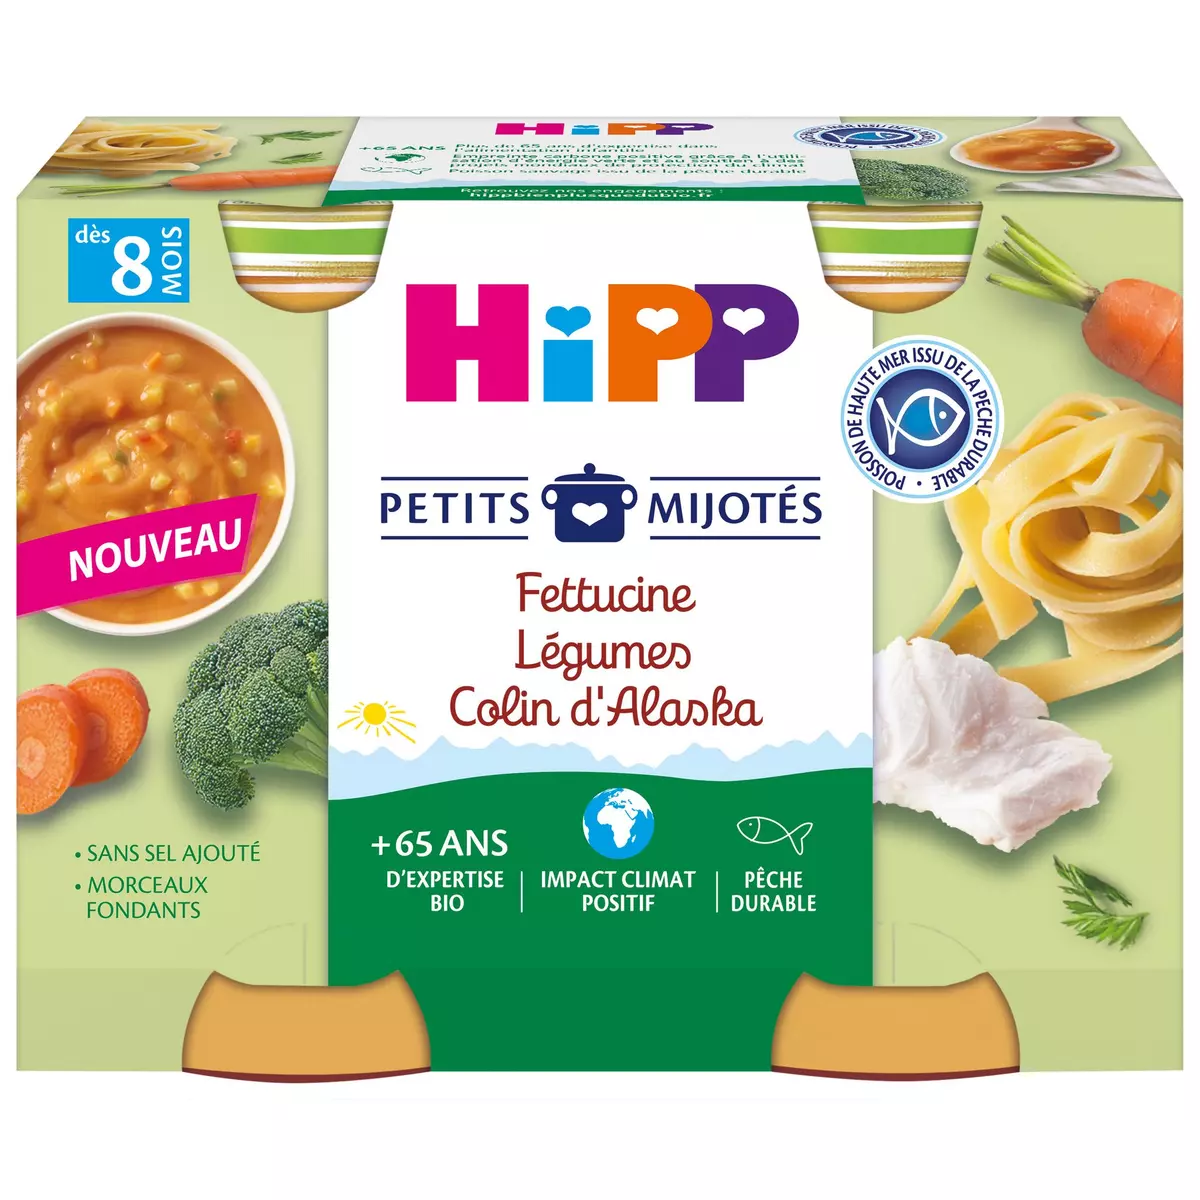 HIPP Petits mijotés petit pot fettucine légumes colin dès 8 mois 2x190g